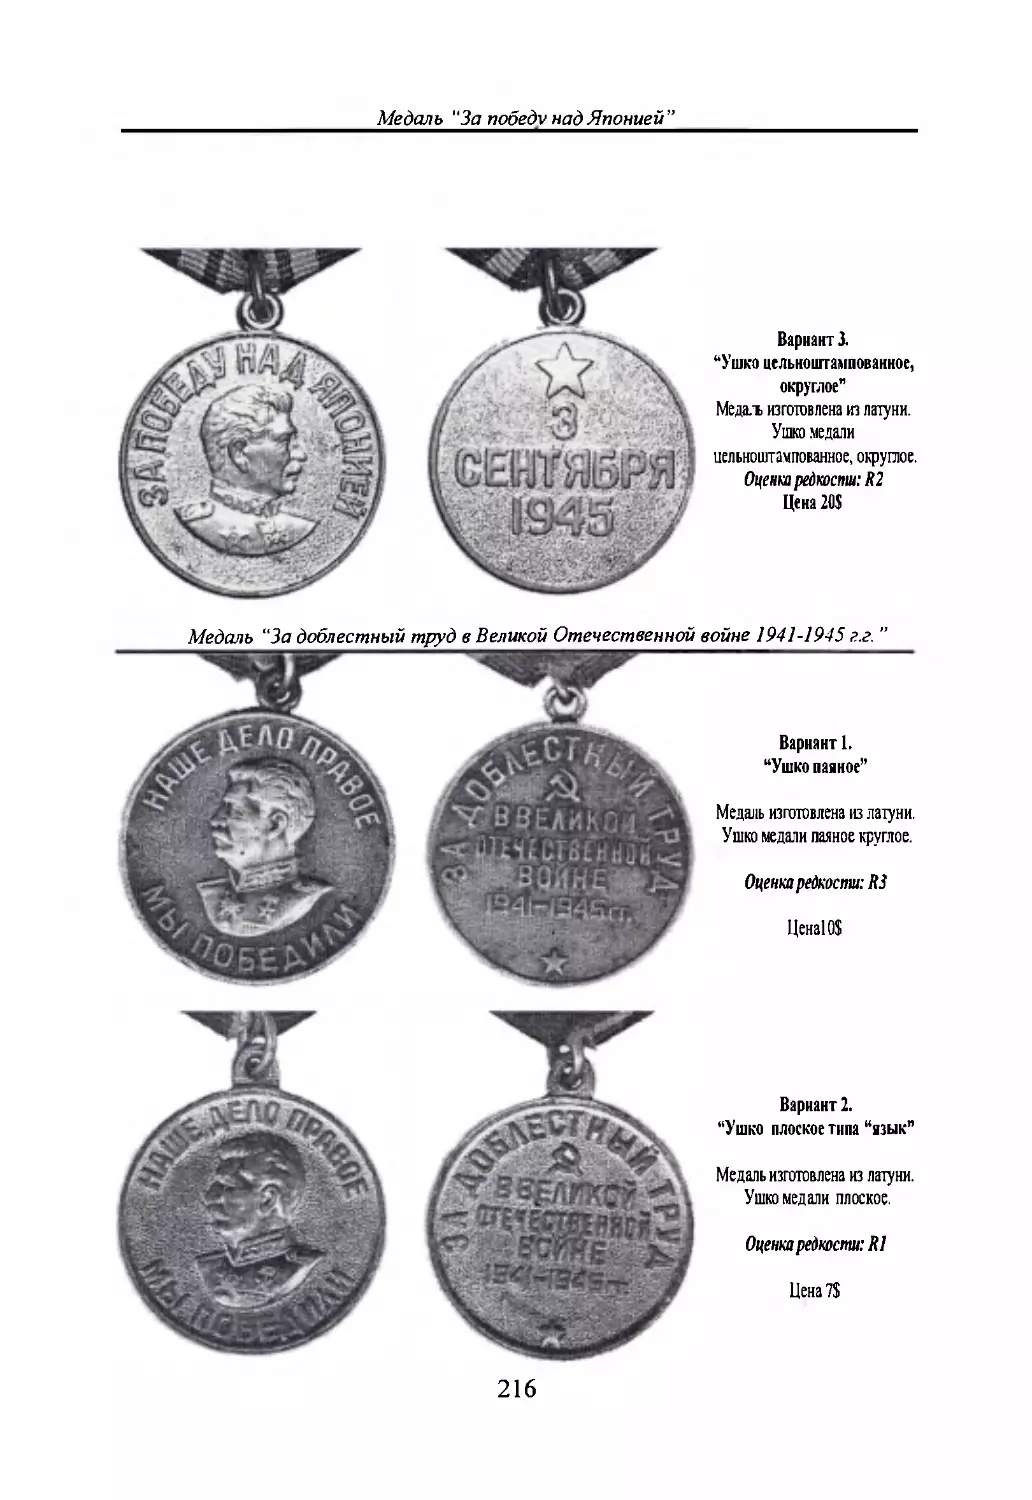 Медаль “За доблестный труд в Великой Отечественной войне 1941-1945 г.г.”